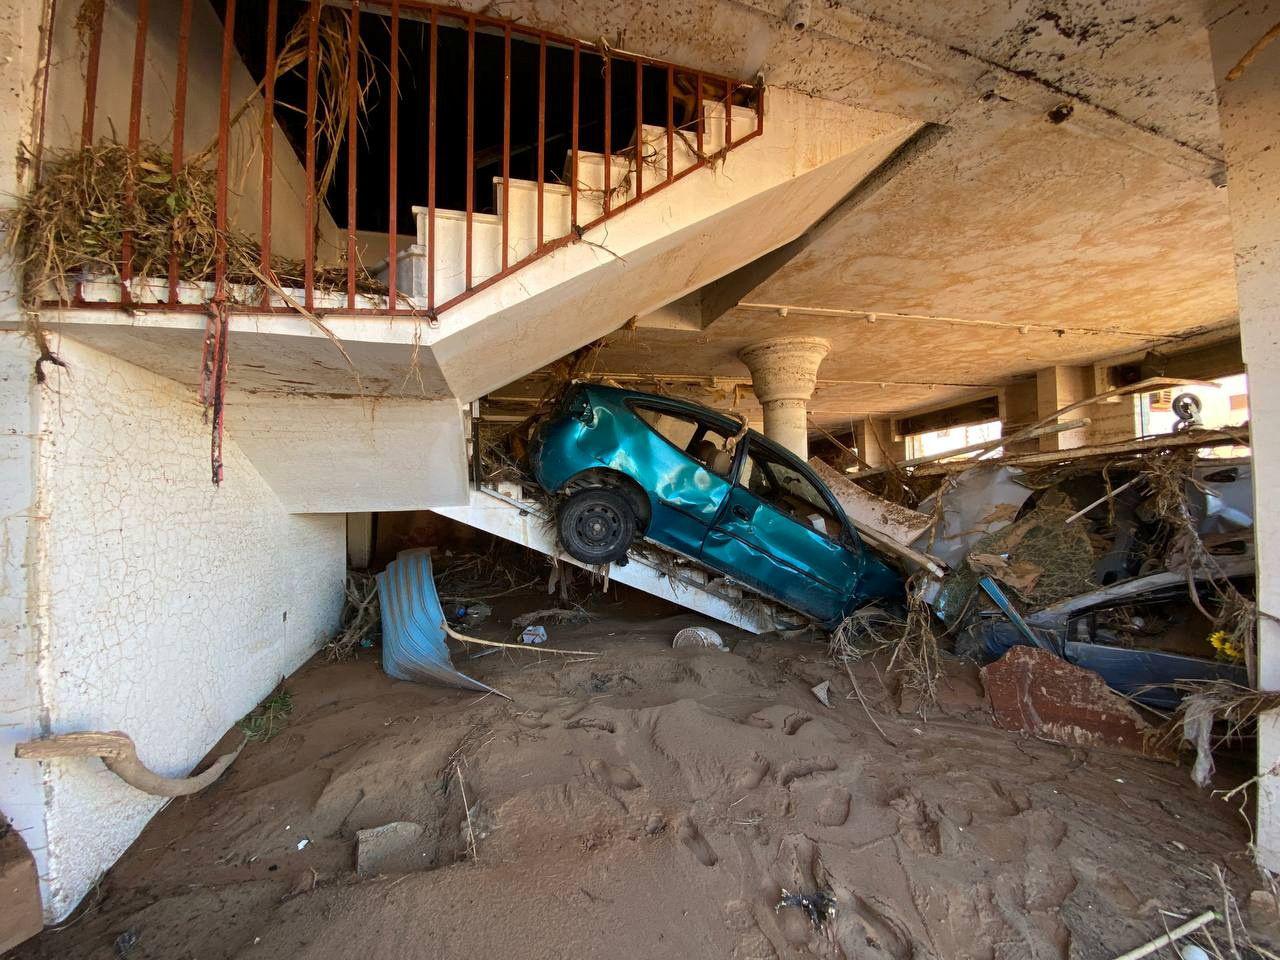 Vỡ đập ở Libya: Tang thương cảnh 1/4 thành phố bị 